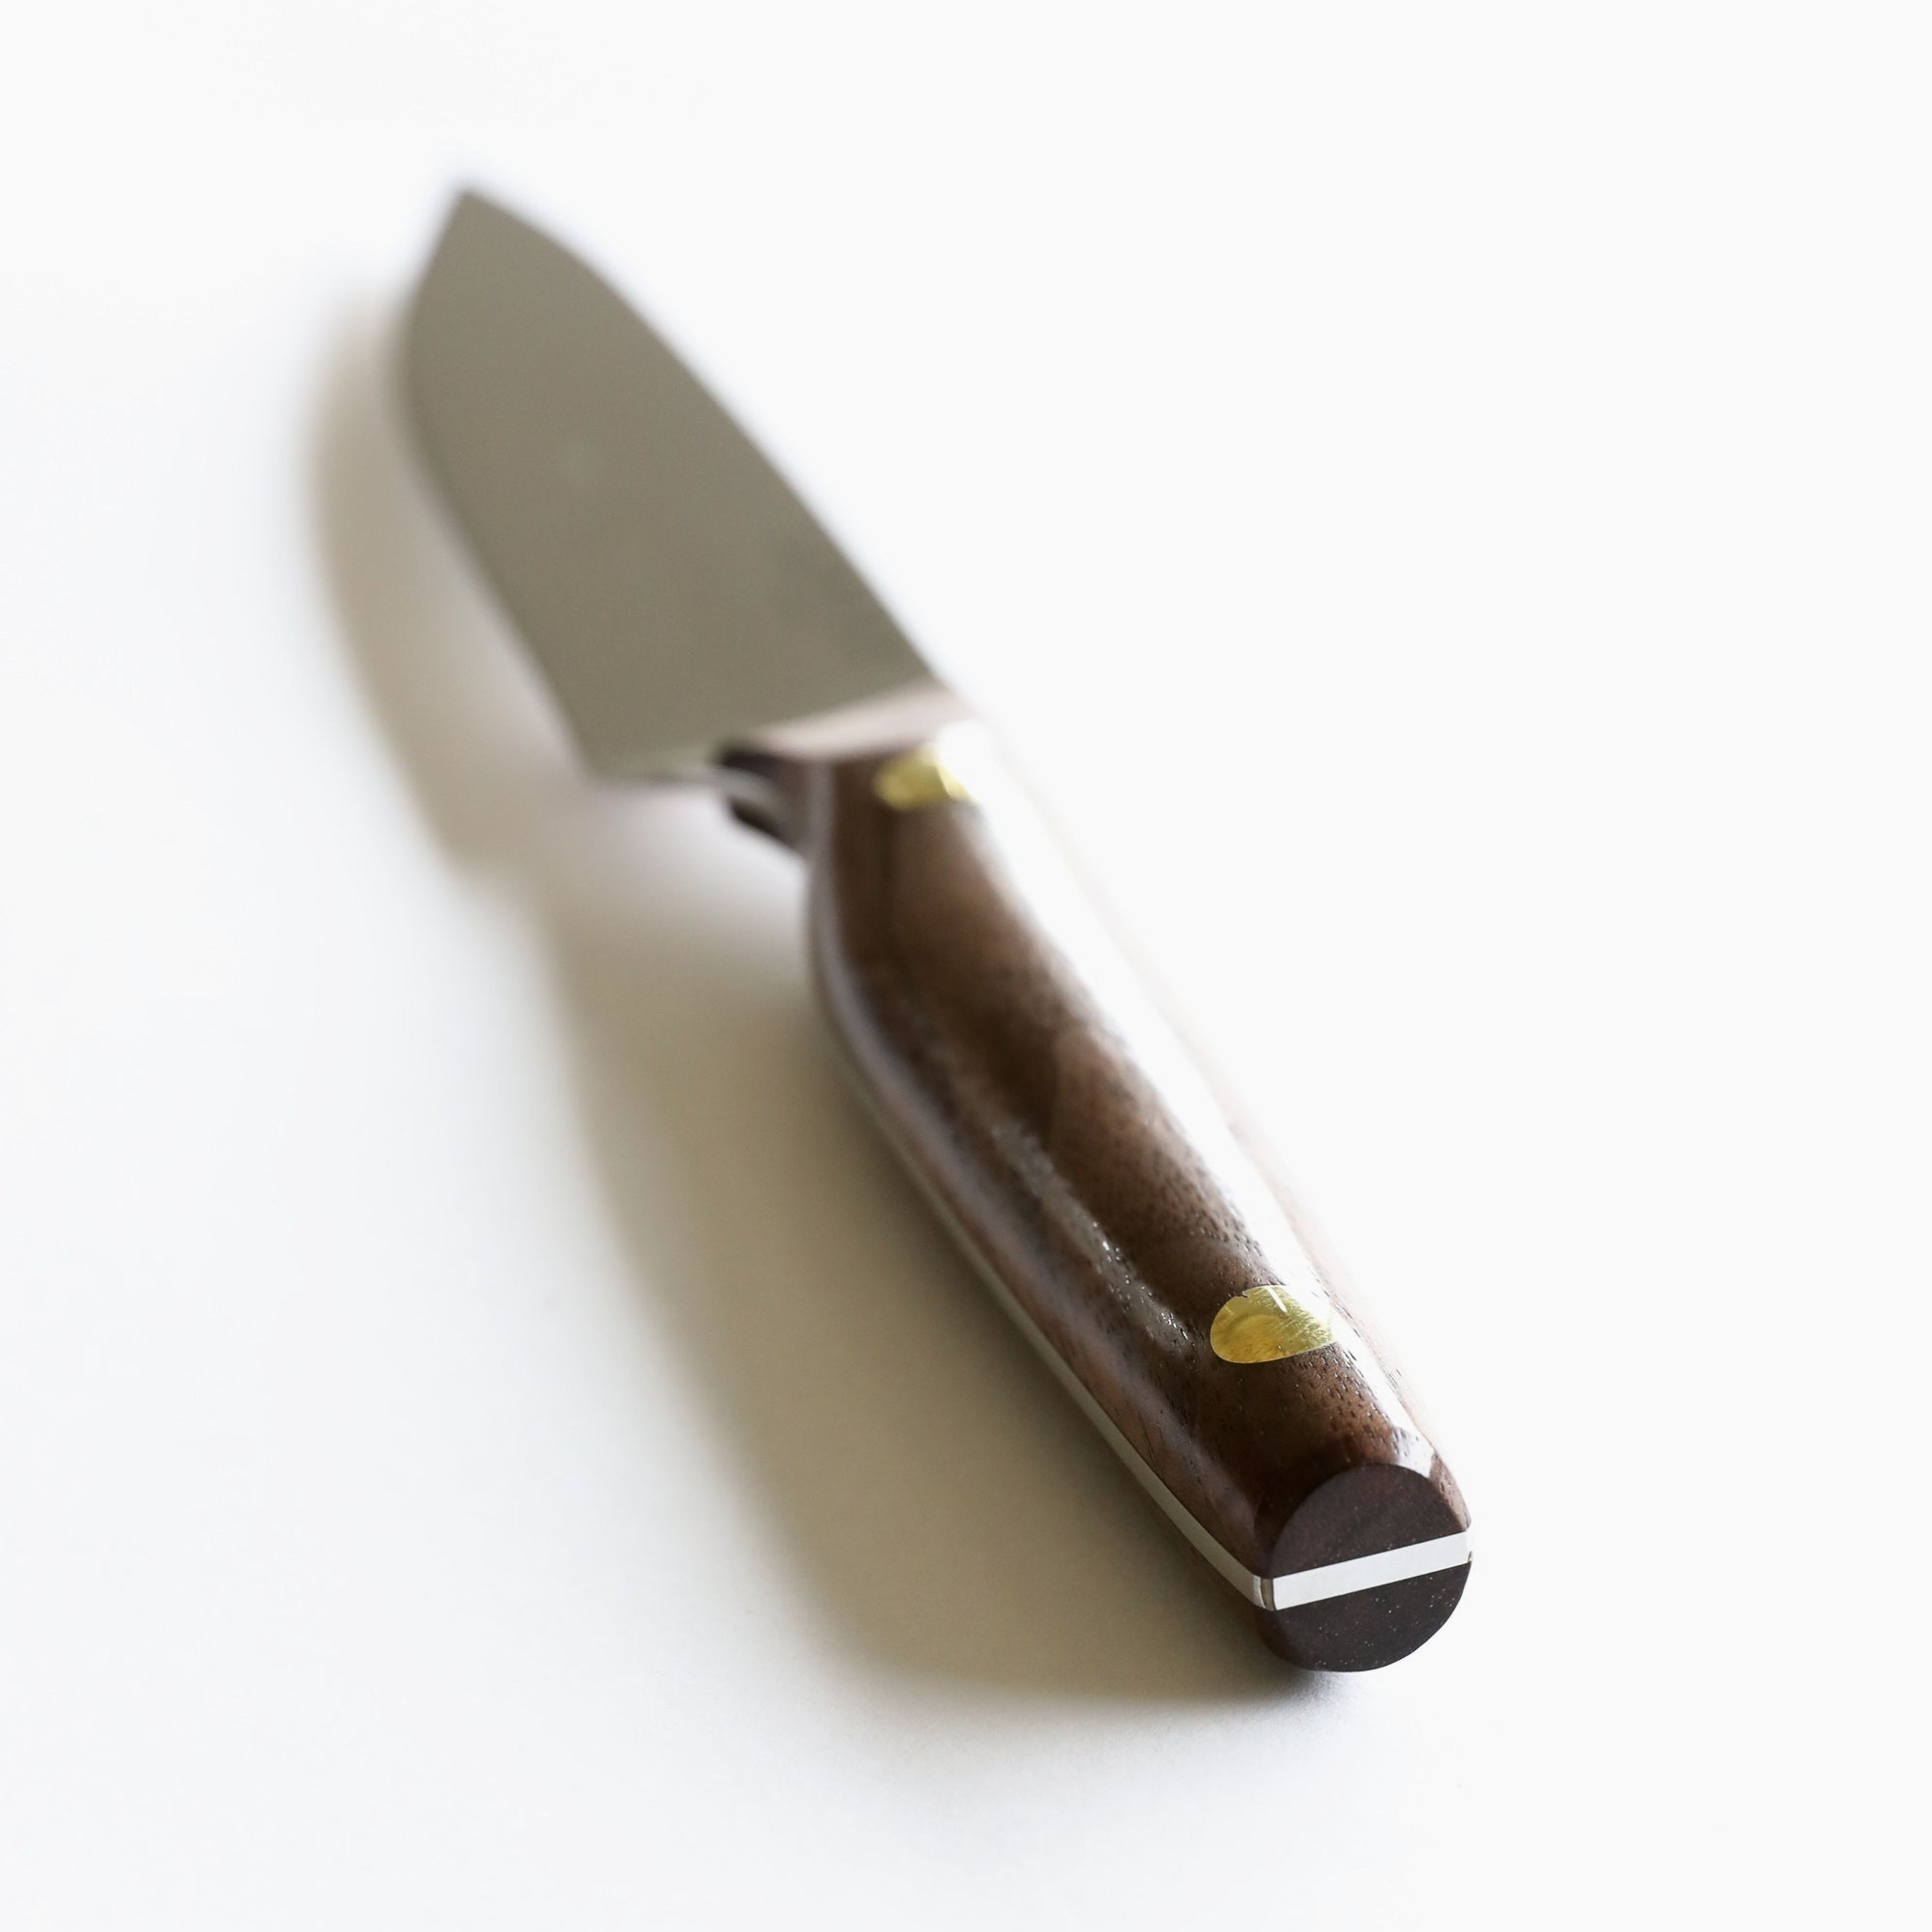 6" Vintage Utility Knife